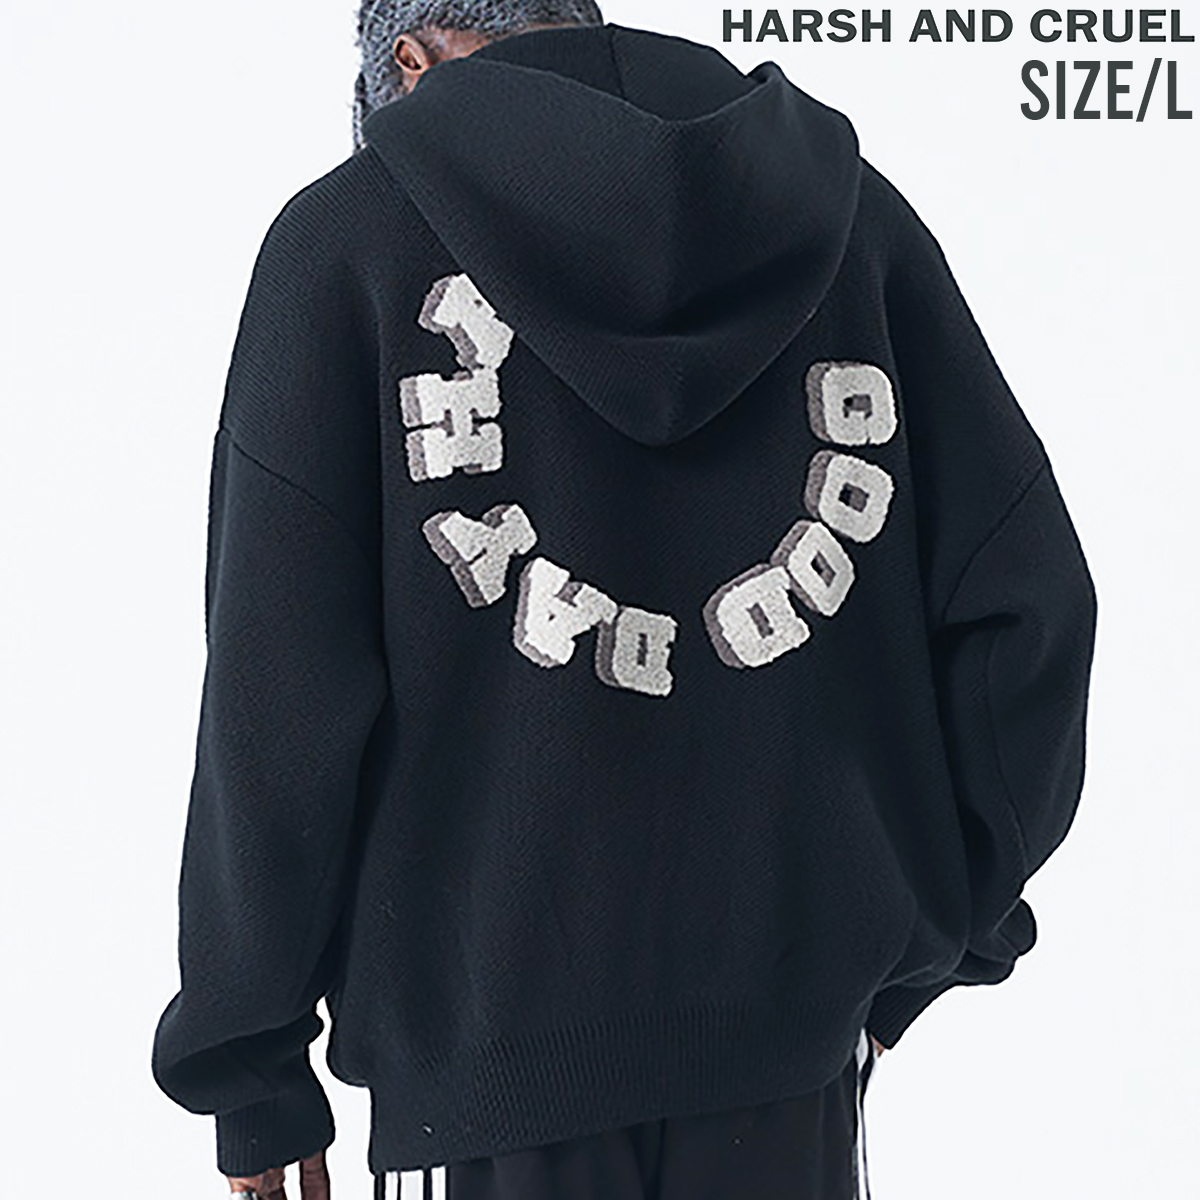 【 HARSH AND CRUEL 】 ユニセックス サガラ ワッペンロゴ ニット パーカー Embroidery PATCH 3D LOGO KNIT HOODIE ブラック Lサイズ